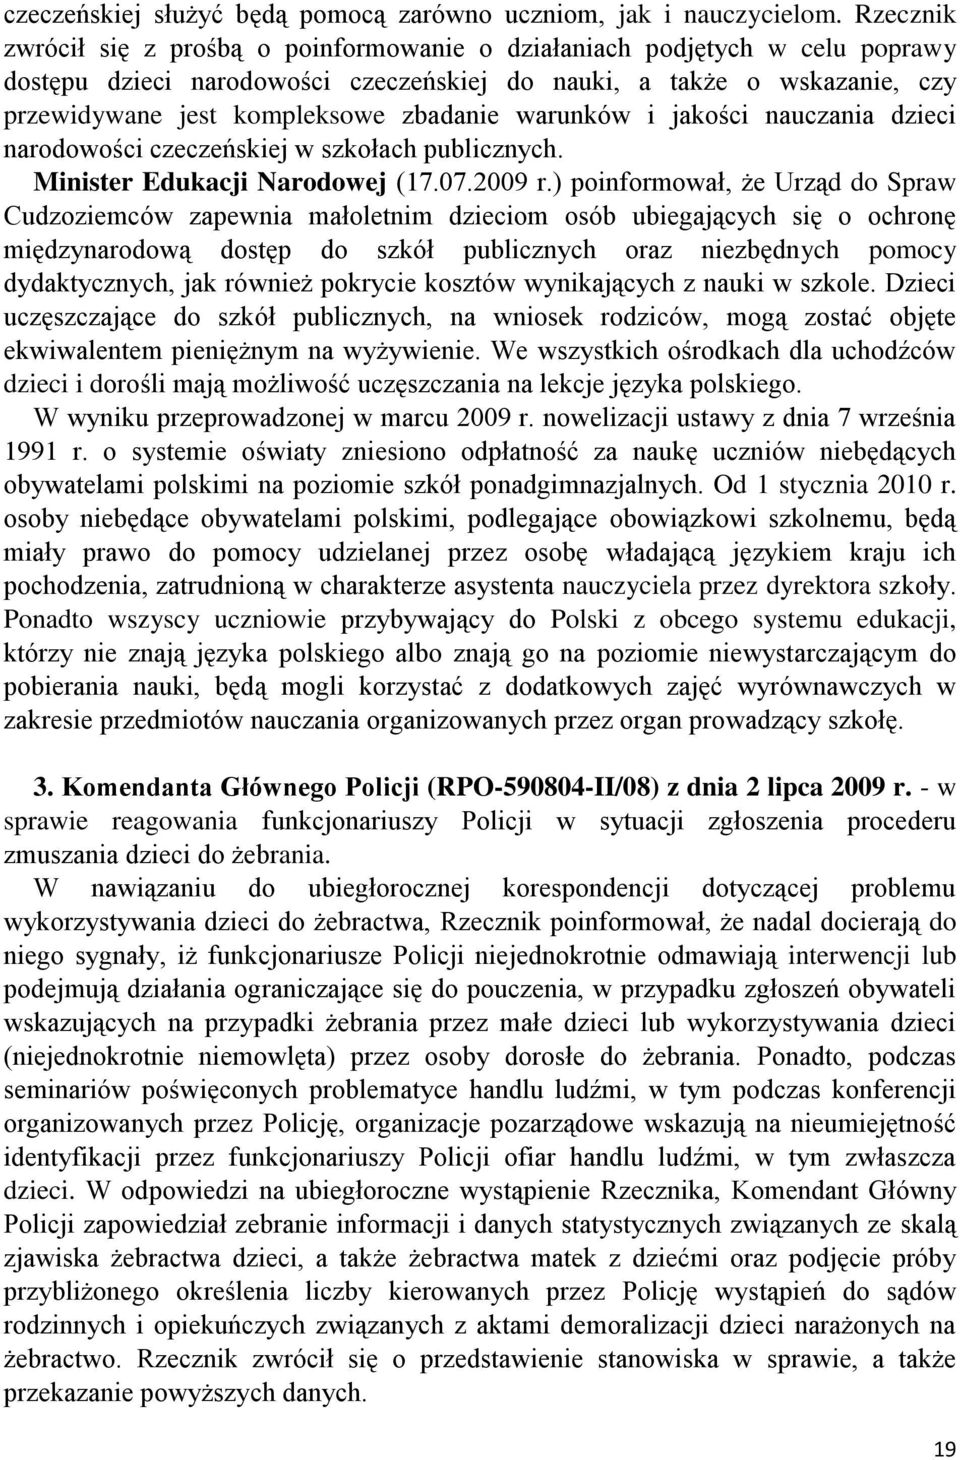 warunków i jakości nauczania dzieci narodowości czeczeńskiej w szkołach publicznych. Minister Edukacji Narodowej (17.07.2009 r.